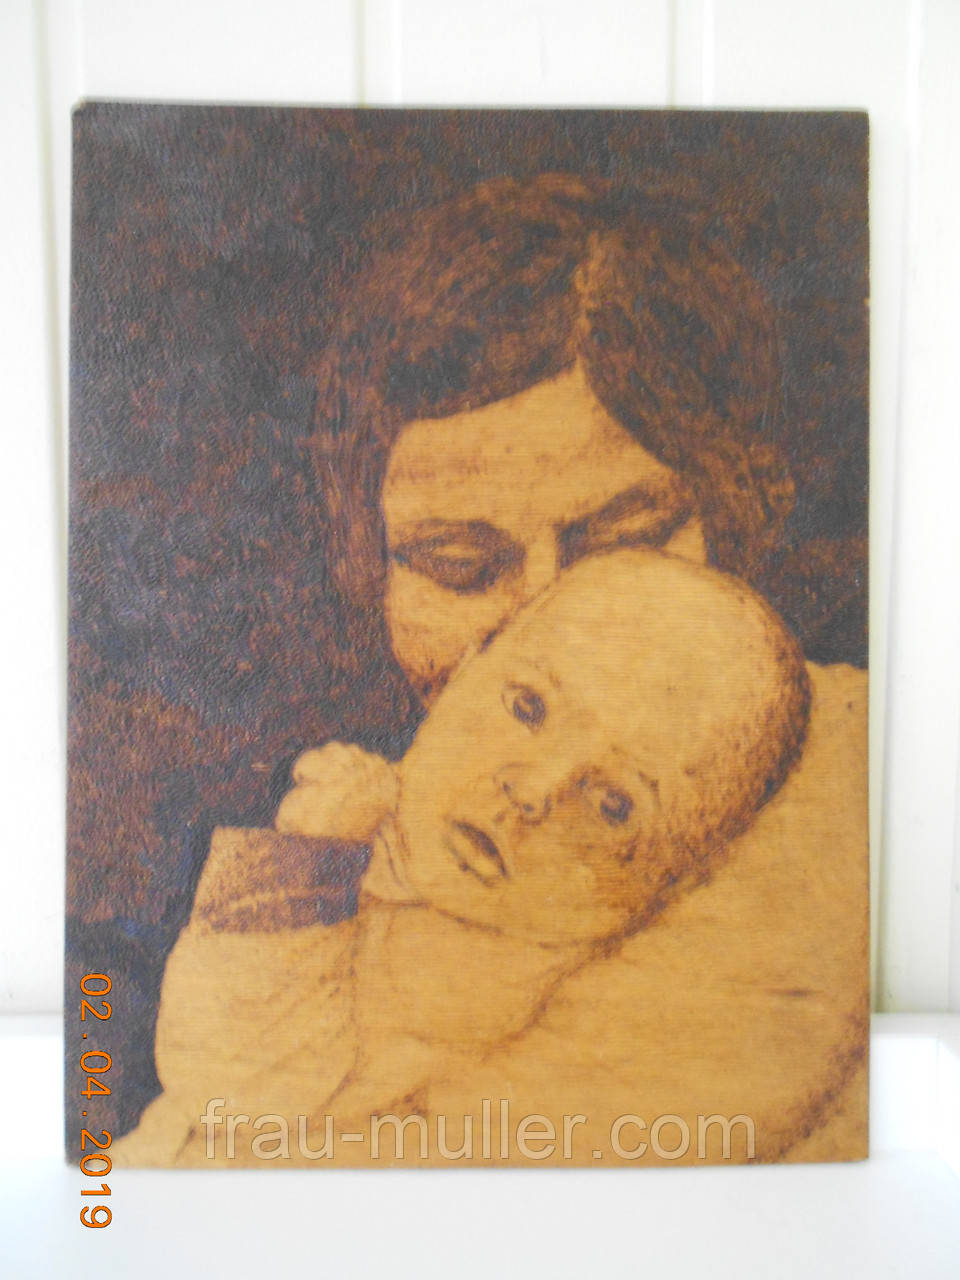 Картина "Мати і дитя" випалювання по дереву, художник Степаньян Р. Л. 1979 р.